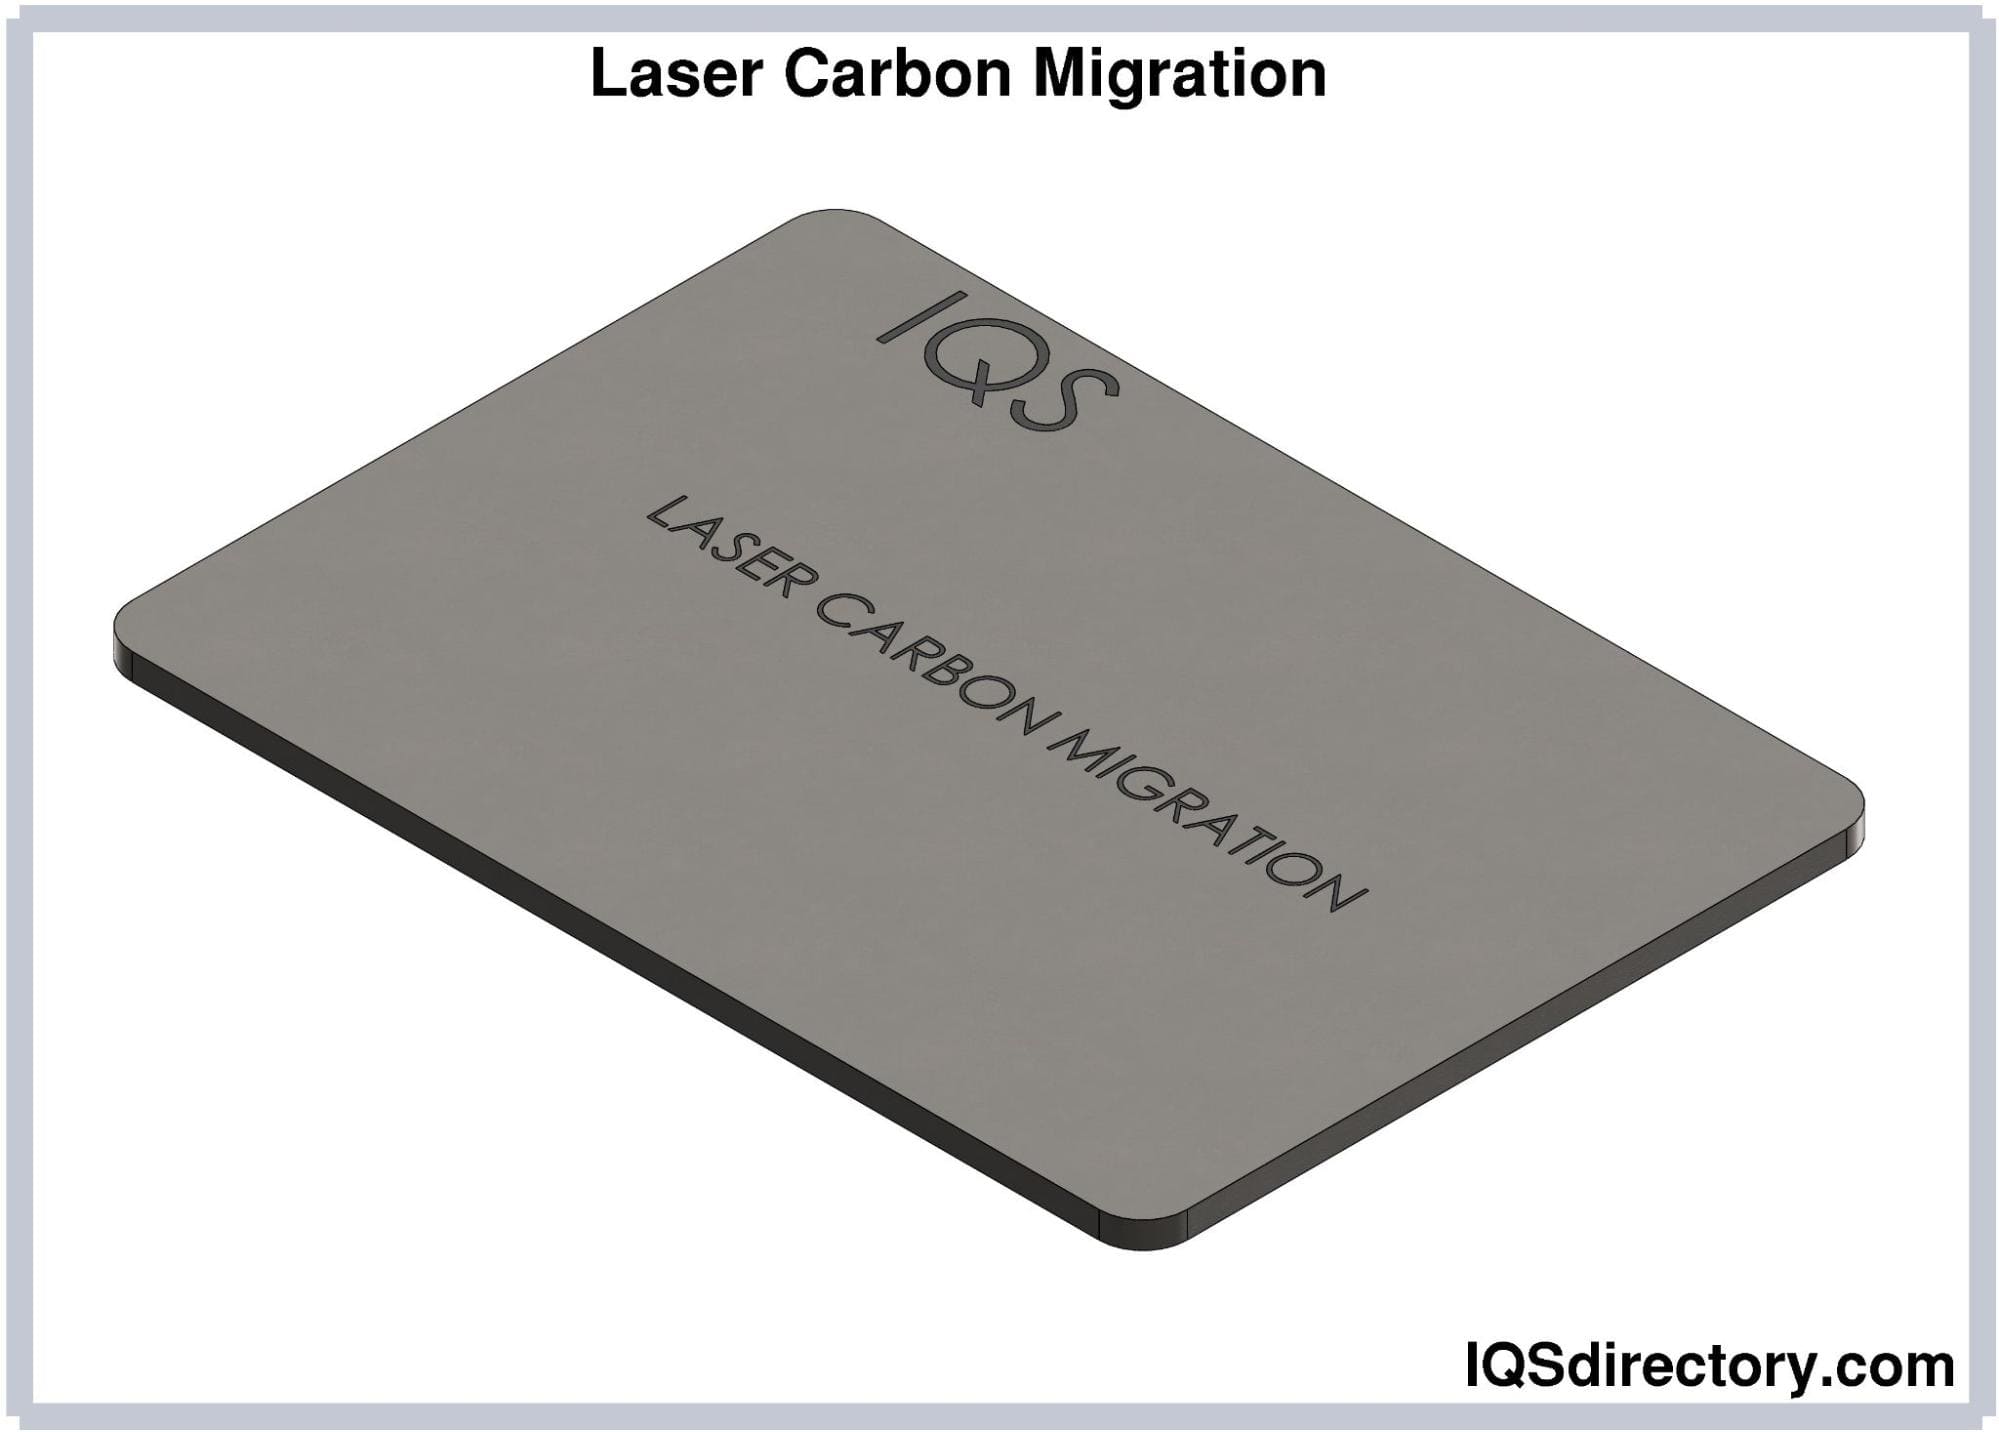 Laser Carbon Migration